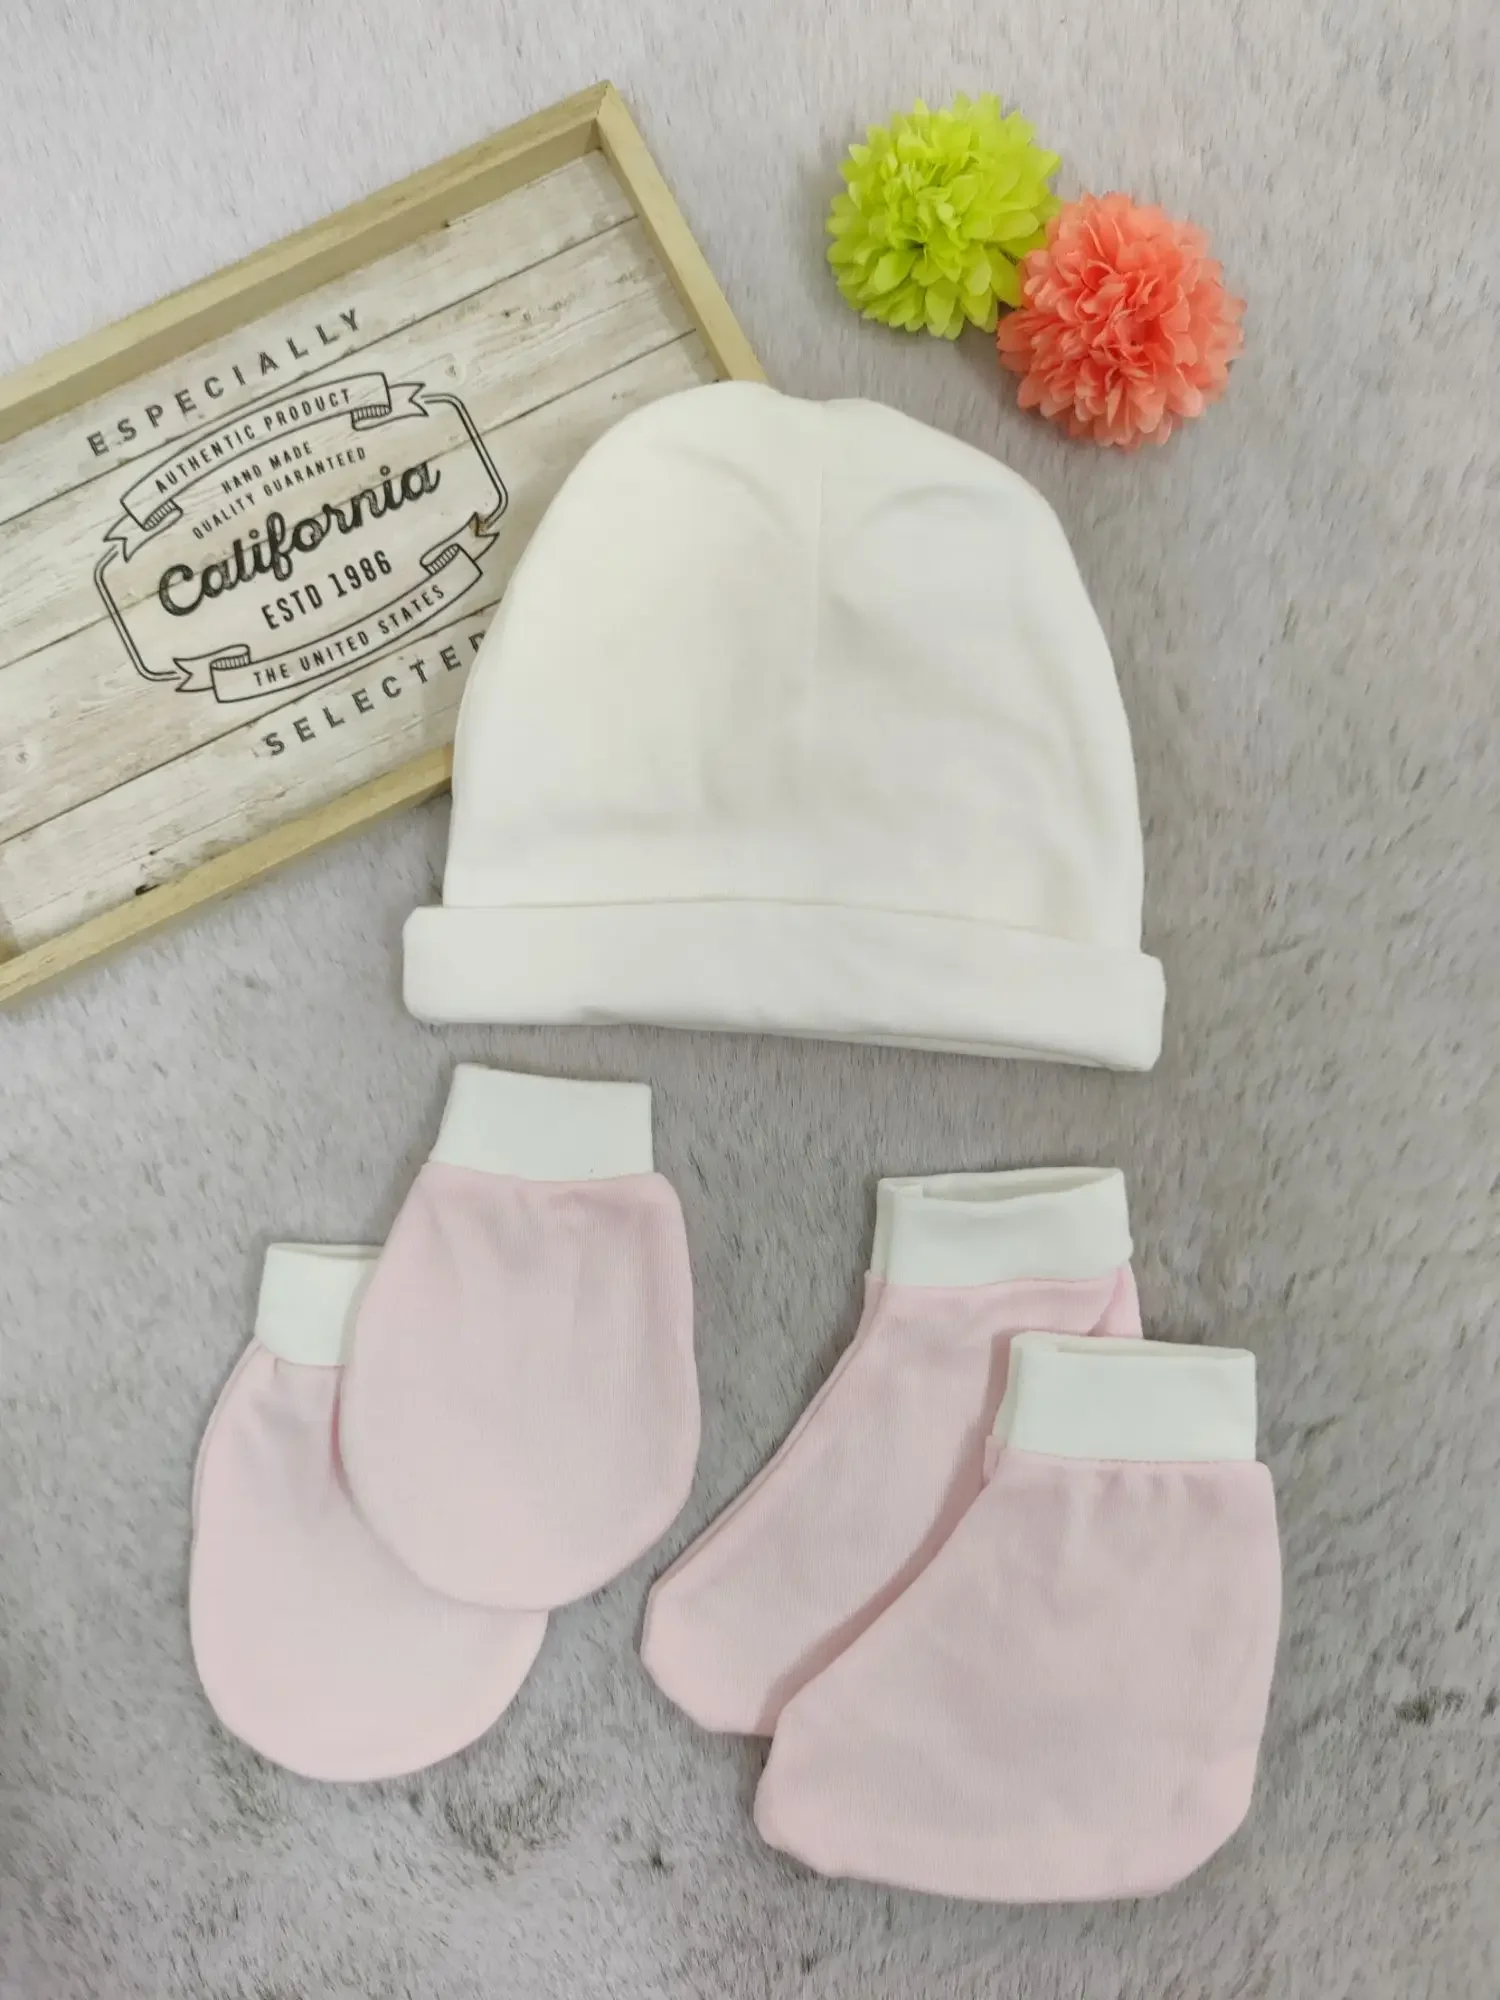 [3 in 1] Newborn Baby Hat Mittens Booties Set (Soft Cotton) (2)